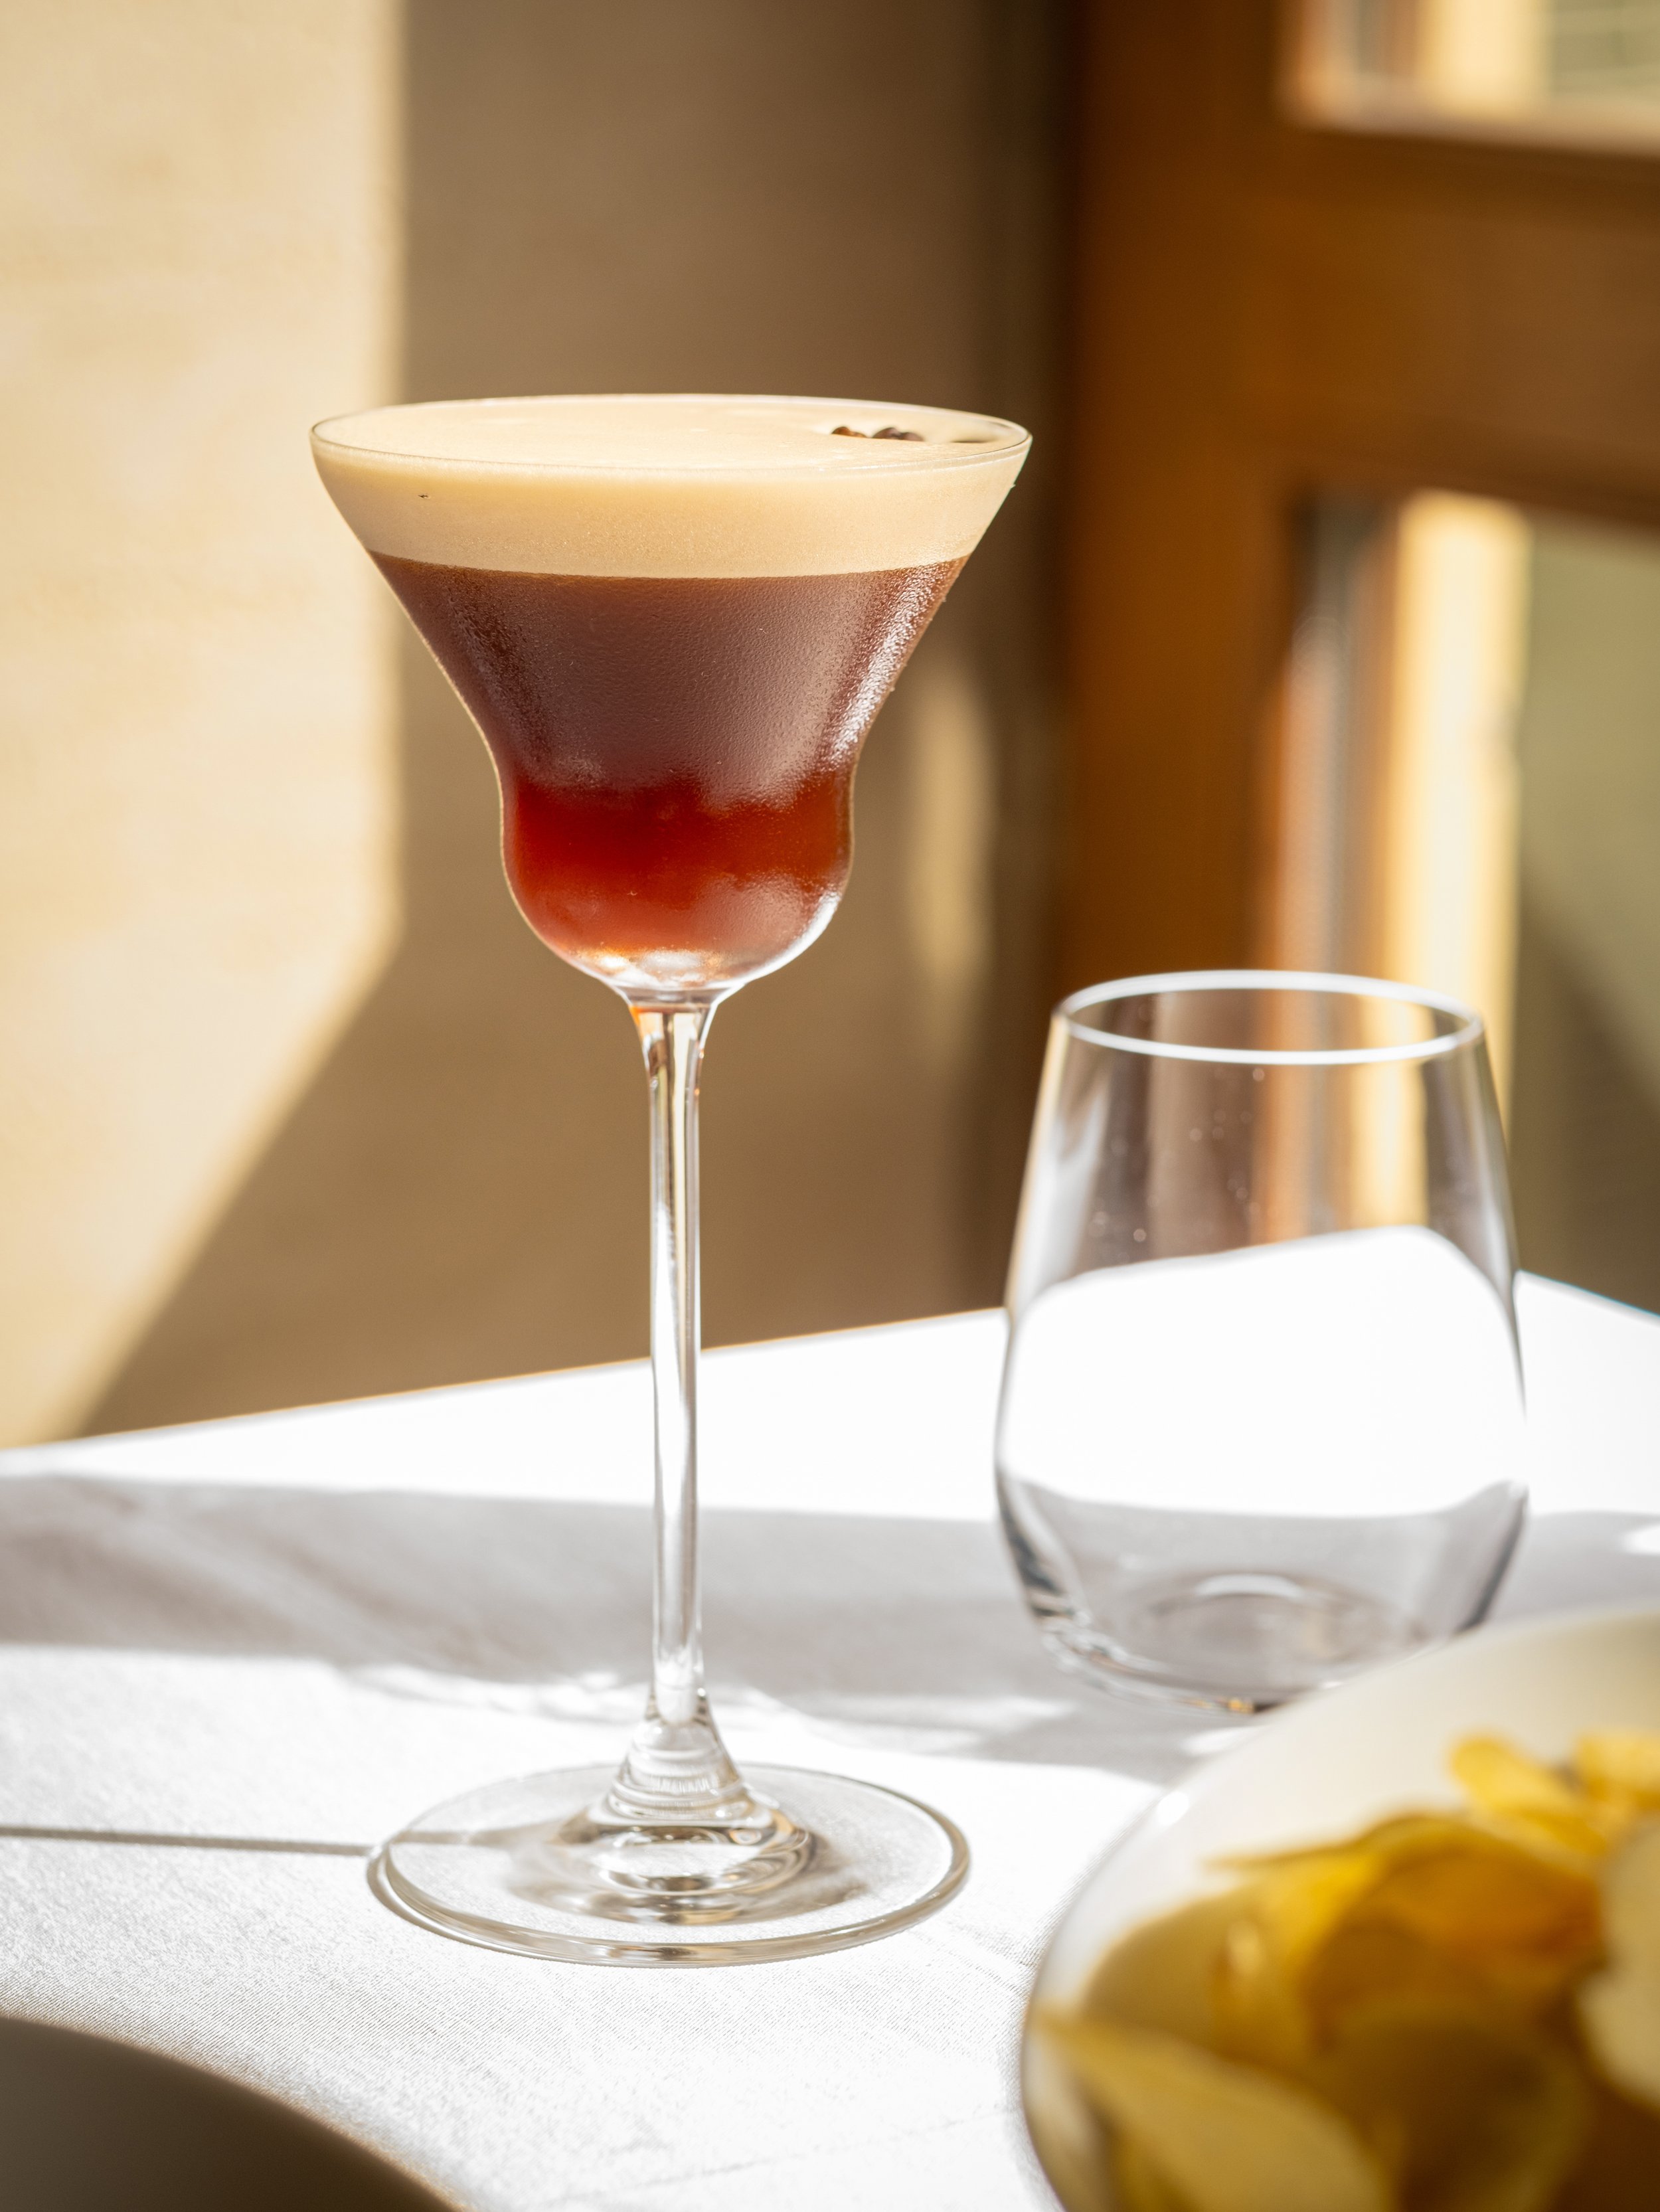 Hladké kávové martini z BRICK'S, dokonalá kombinace bohaté kávy a prémiových lihovin, zachycená na pozadí našeho elegantního pražského prostředí. Ideální nápoj, který pozvedne každý večer.